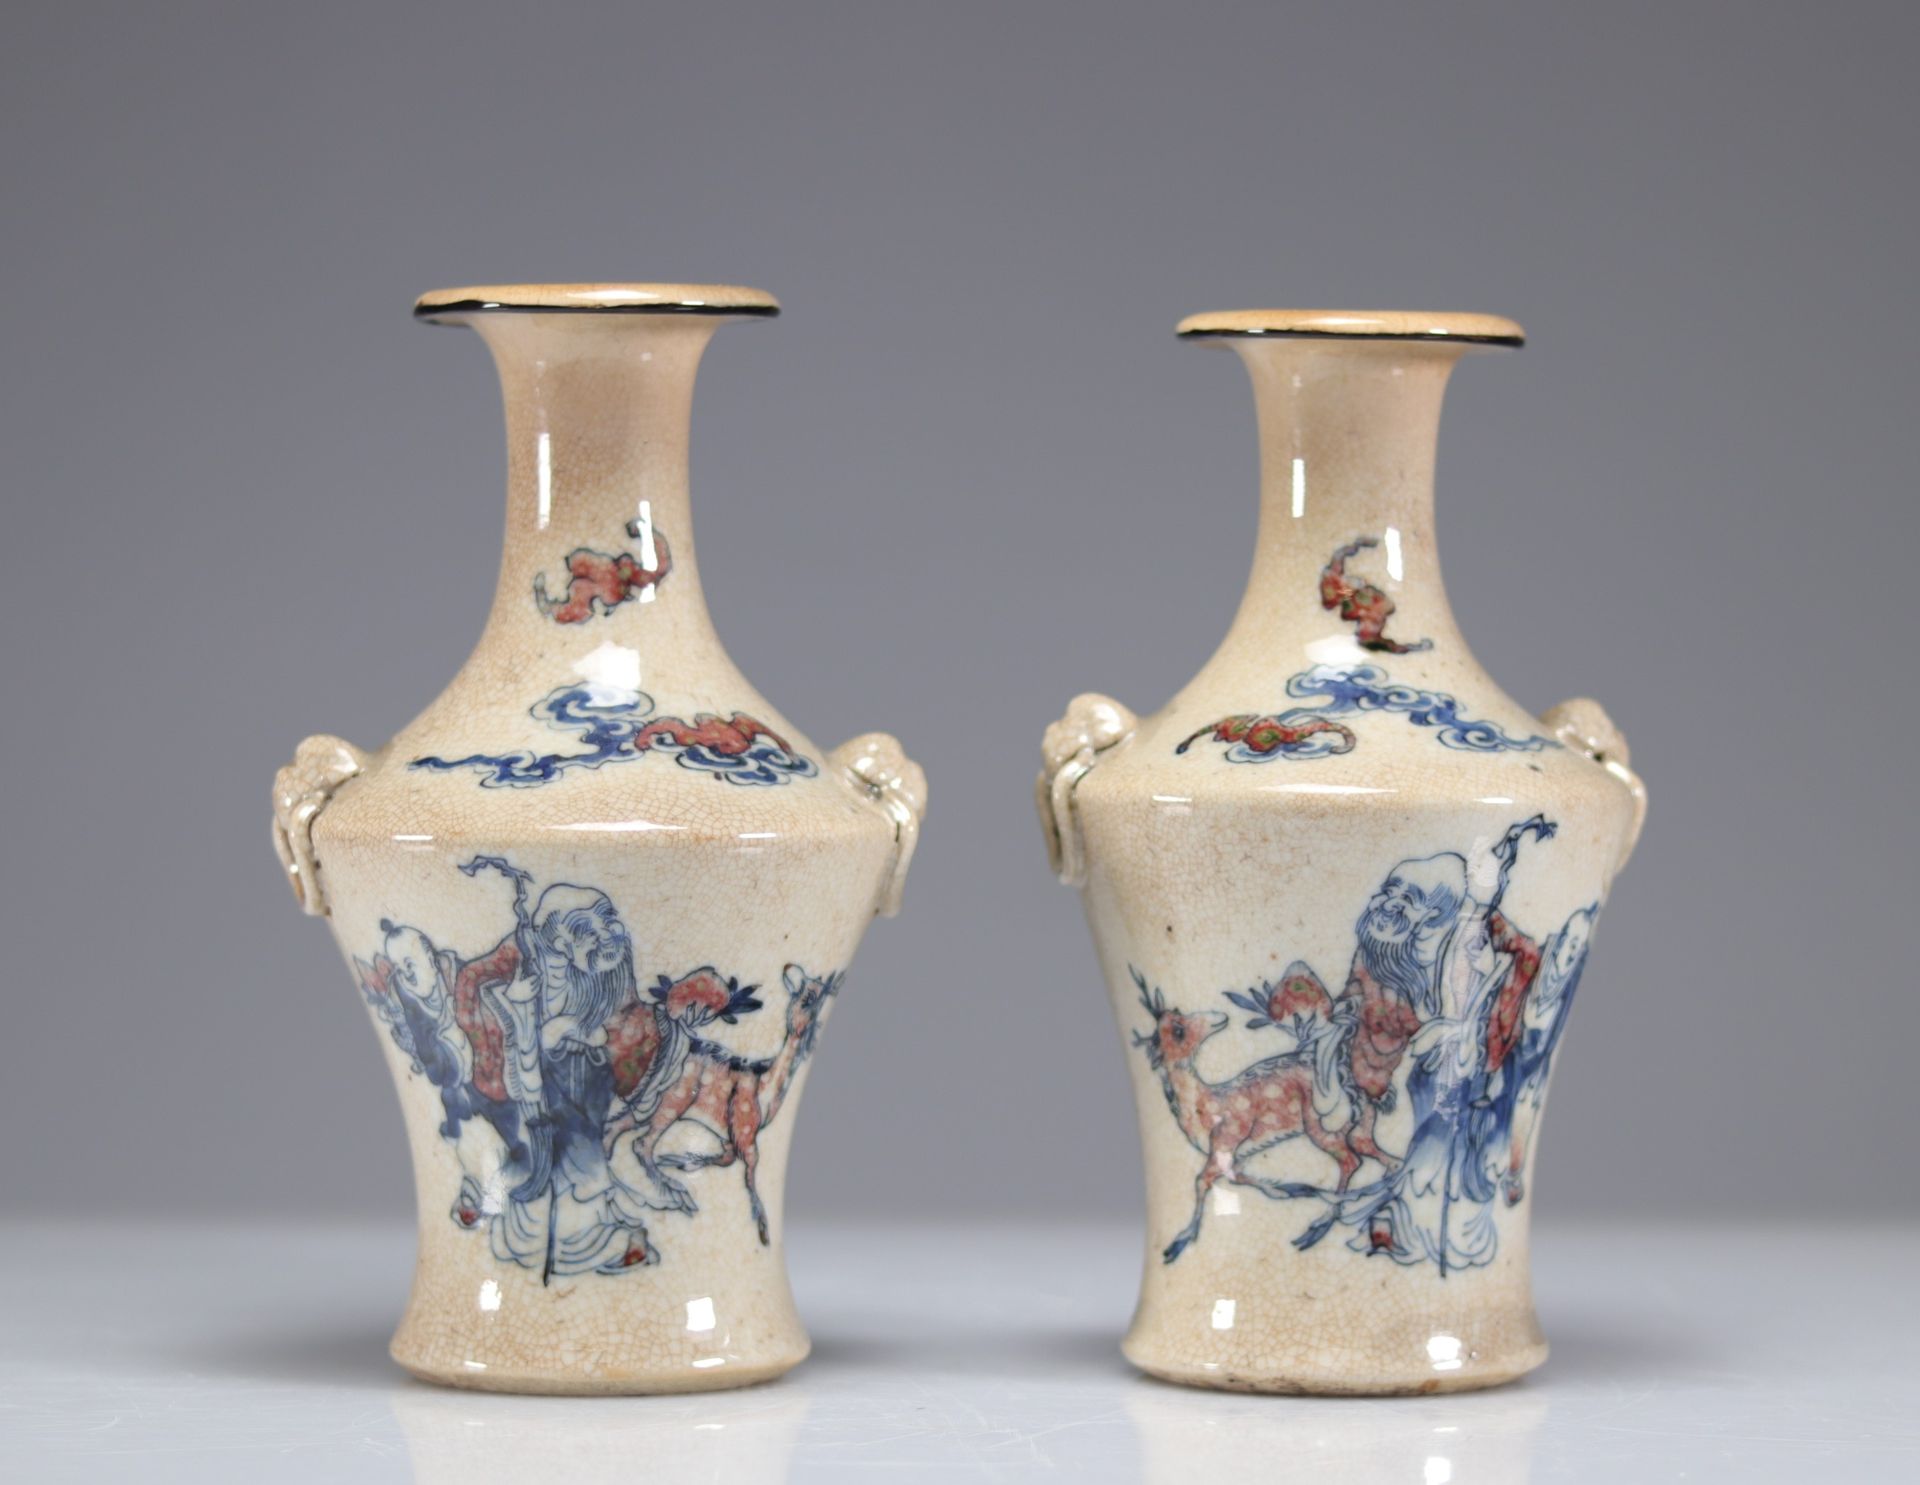 Null 一对罕见的南京瓷器寿老和鹿纹花瓶 19世纪
重量：1.83公斤
地区：中国
尺寸：高225毫米x深130毫米
状况：初见时：状况良好